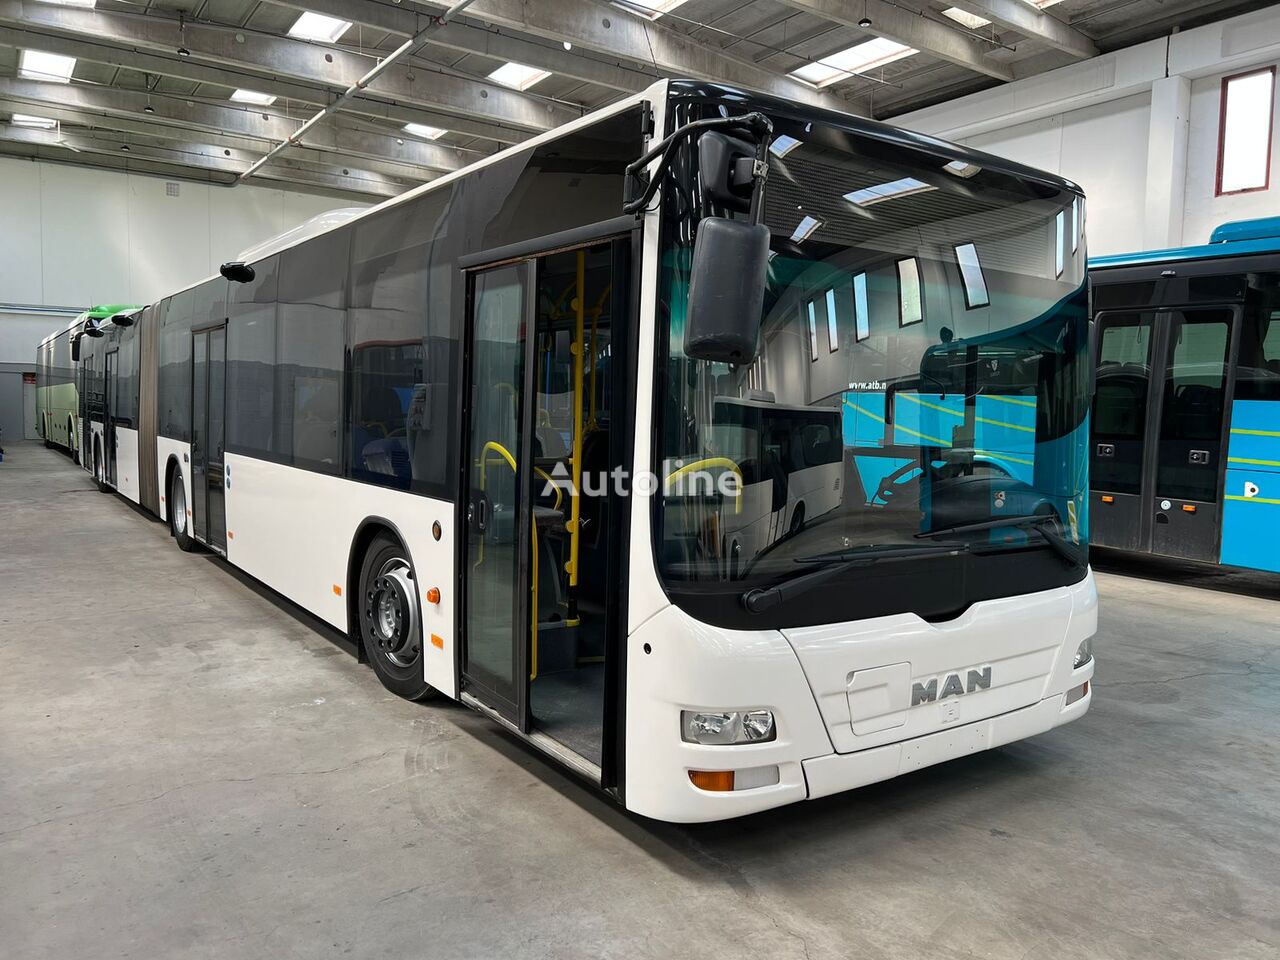 MAN A23 / A40 articulated bus